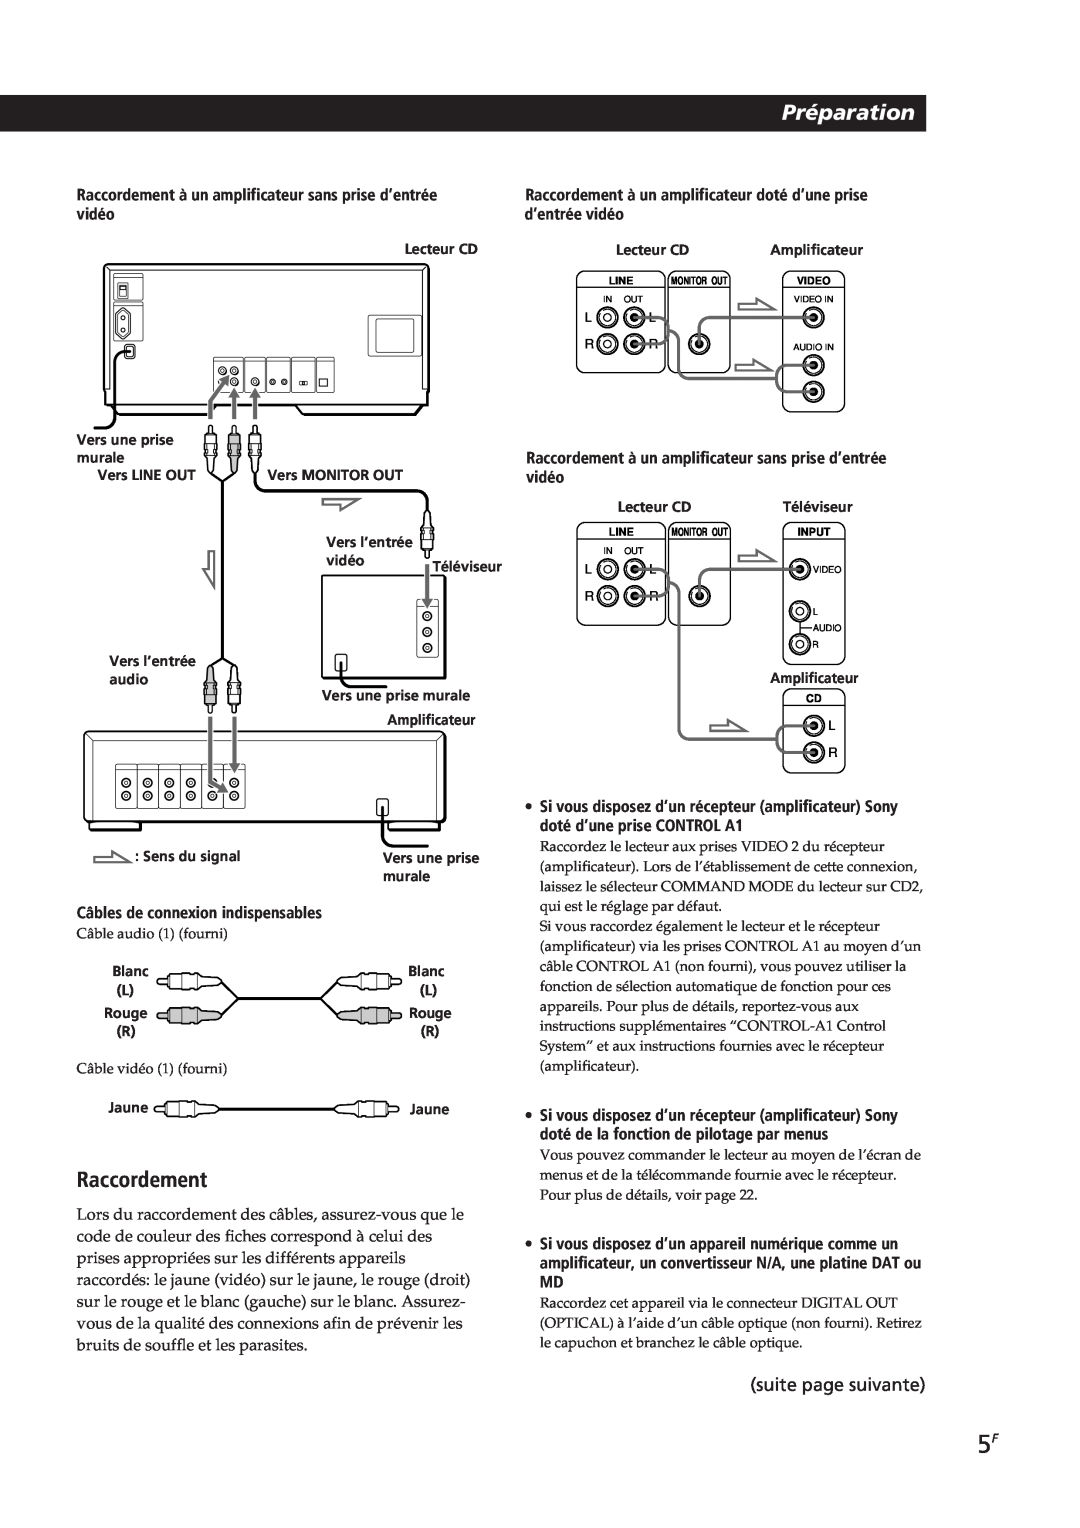 Sony CDP-CX90ES, CDP-CX270 manual Préparation, Raccordement, suite page suivante, Câbles de connexion indispensables 